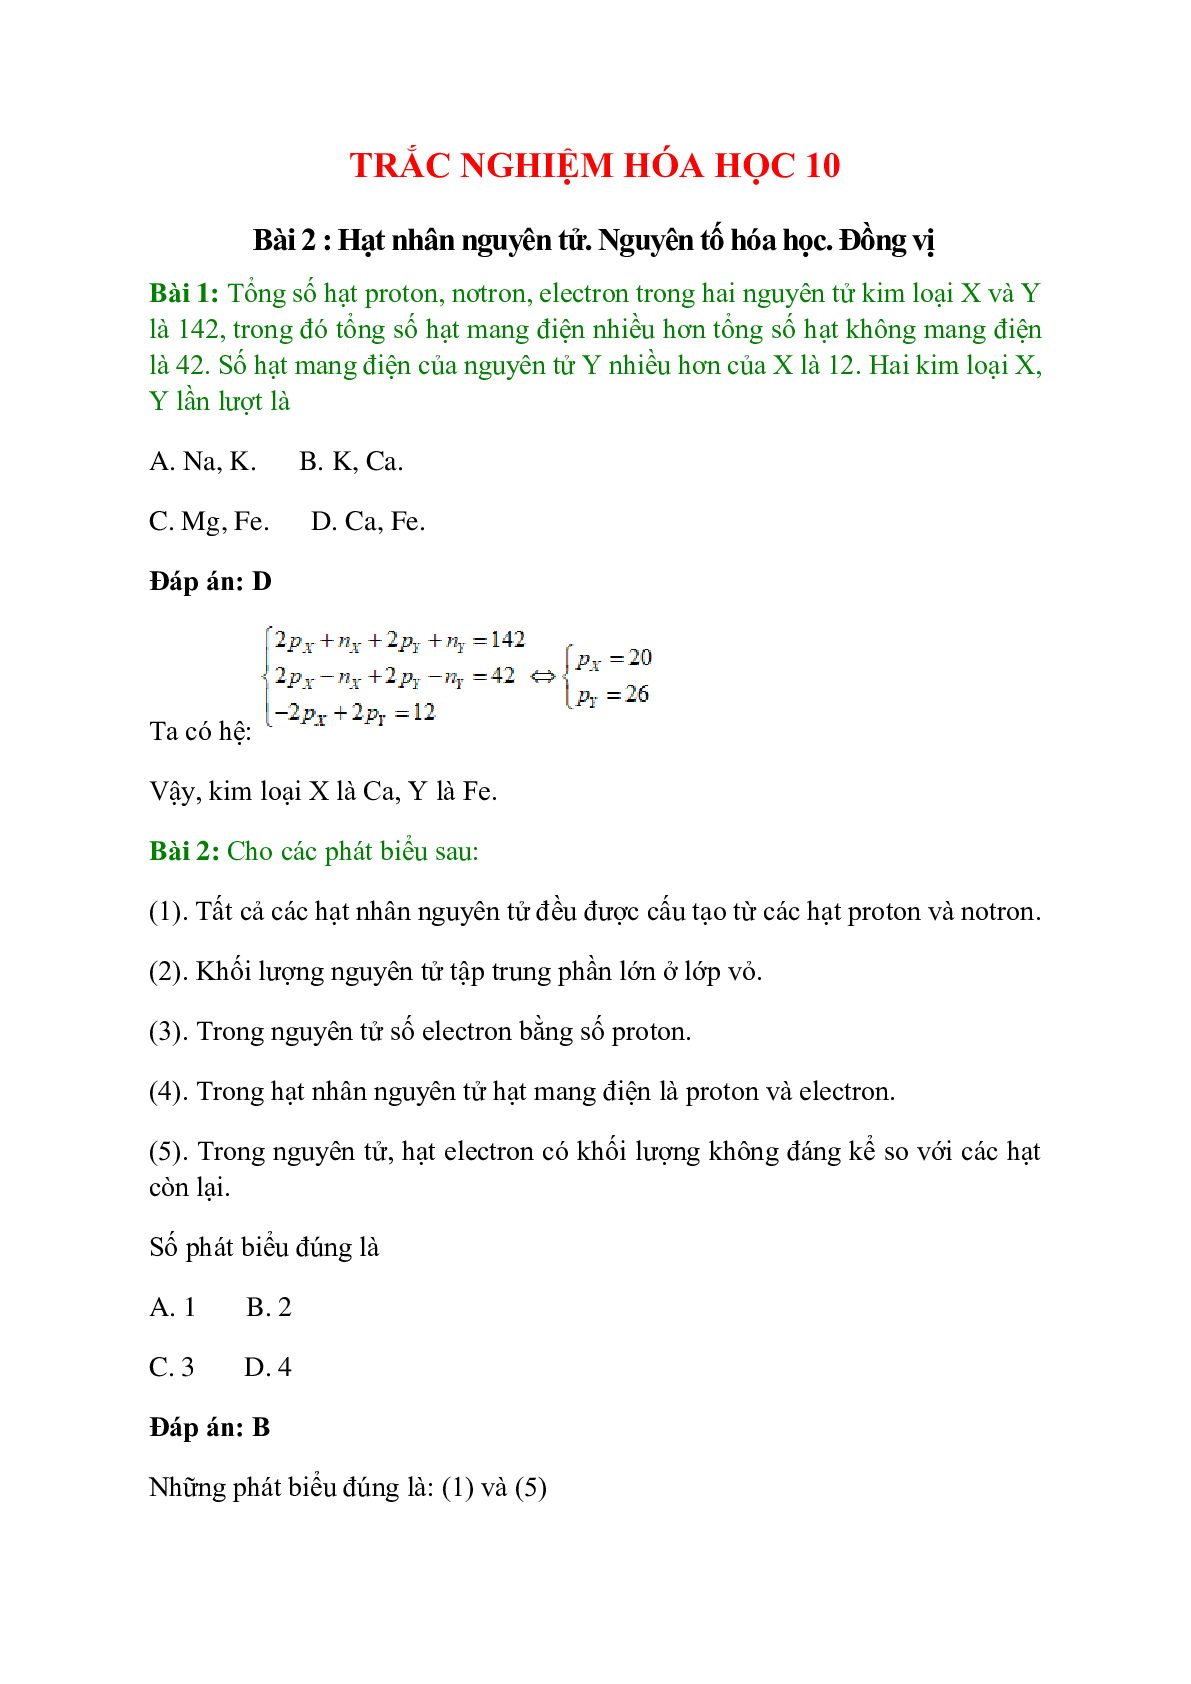 Trắc nghiệm Hạt nhân nguyên tử - Nguyên tố hóa học - Đồng vị có đáp án - Hóa học 10 (trang 1)